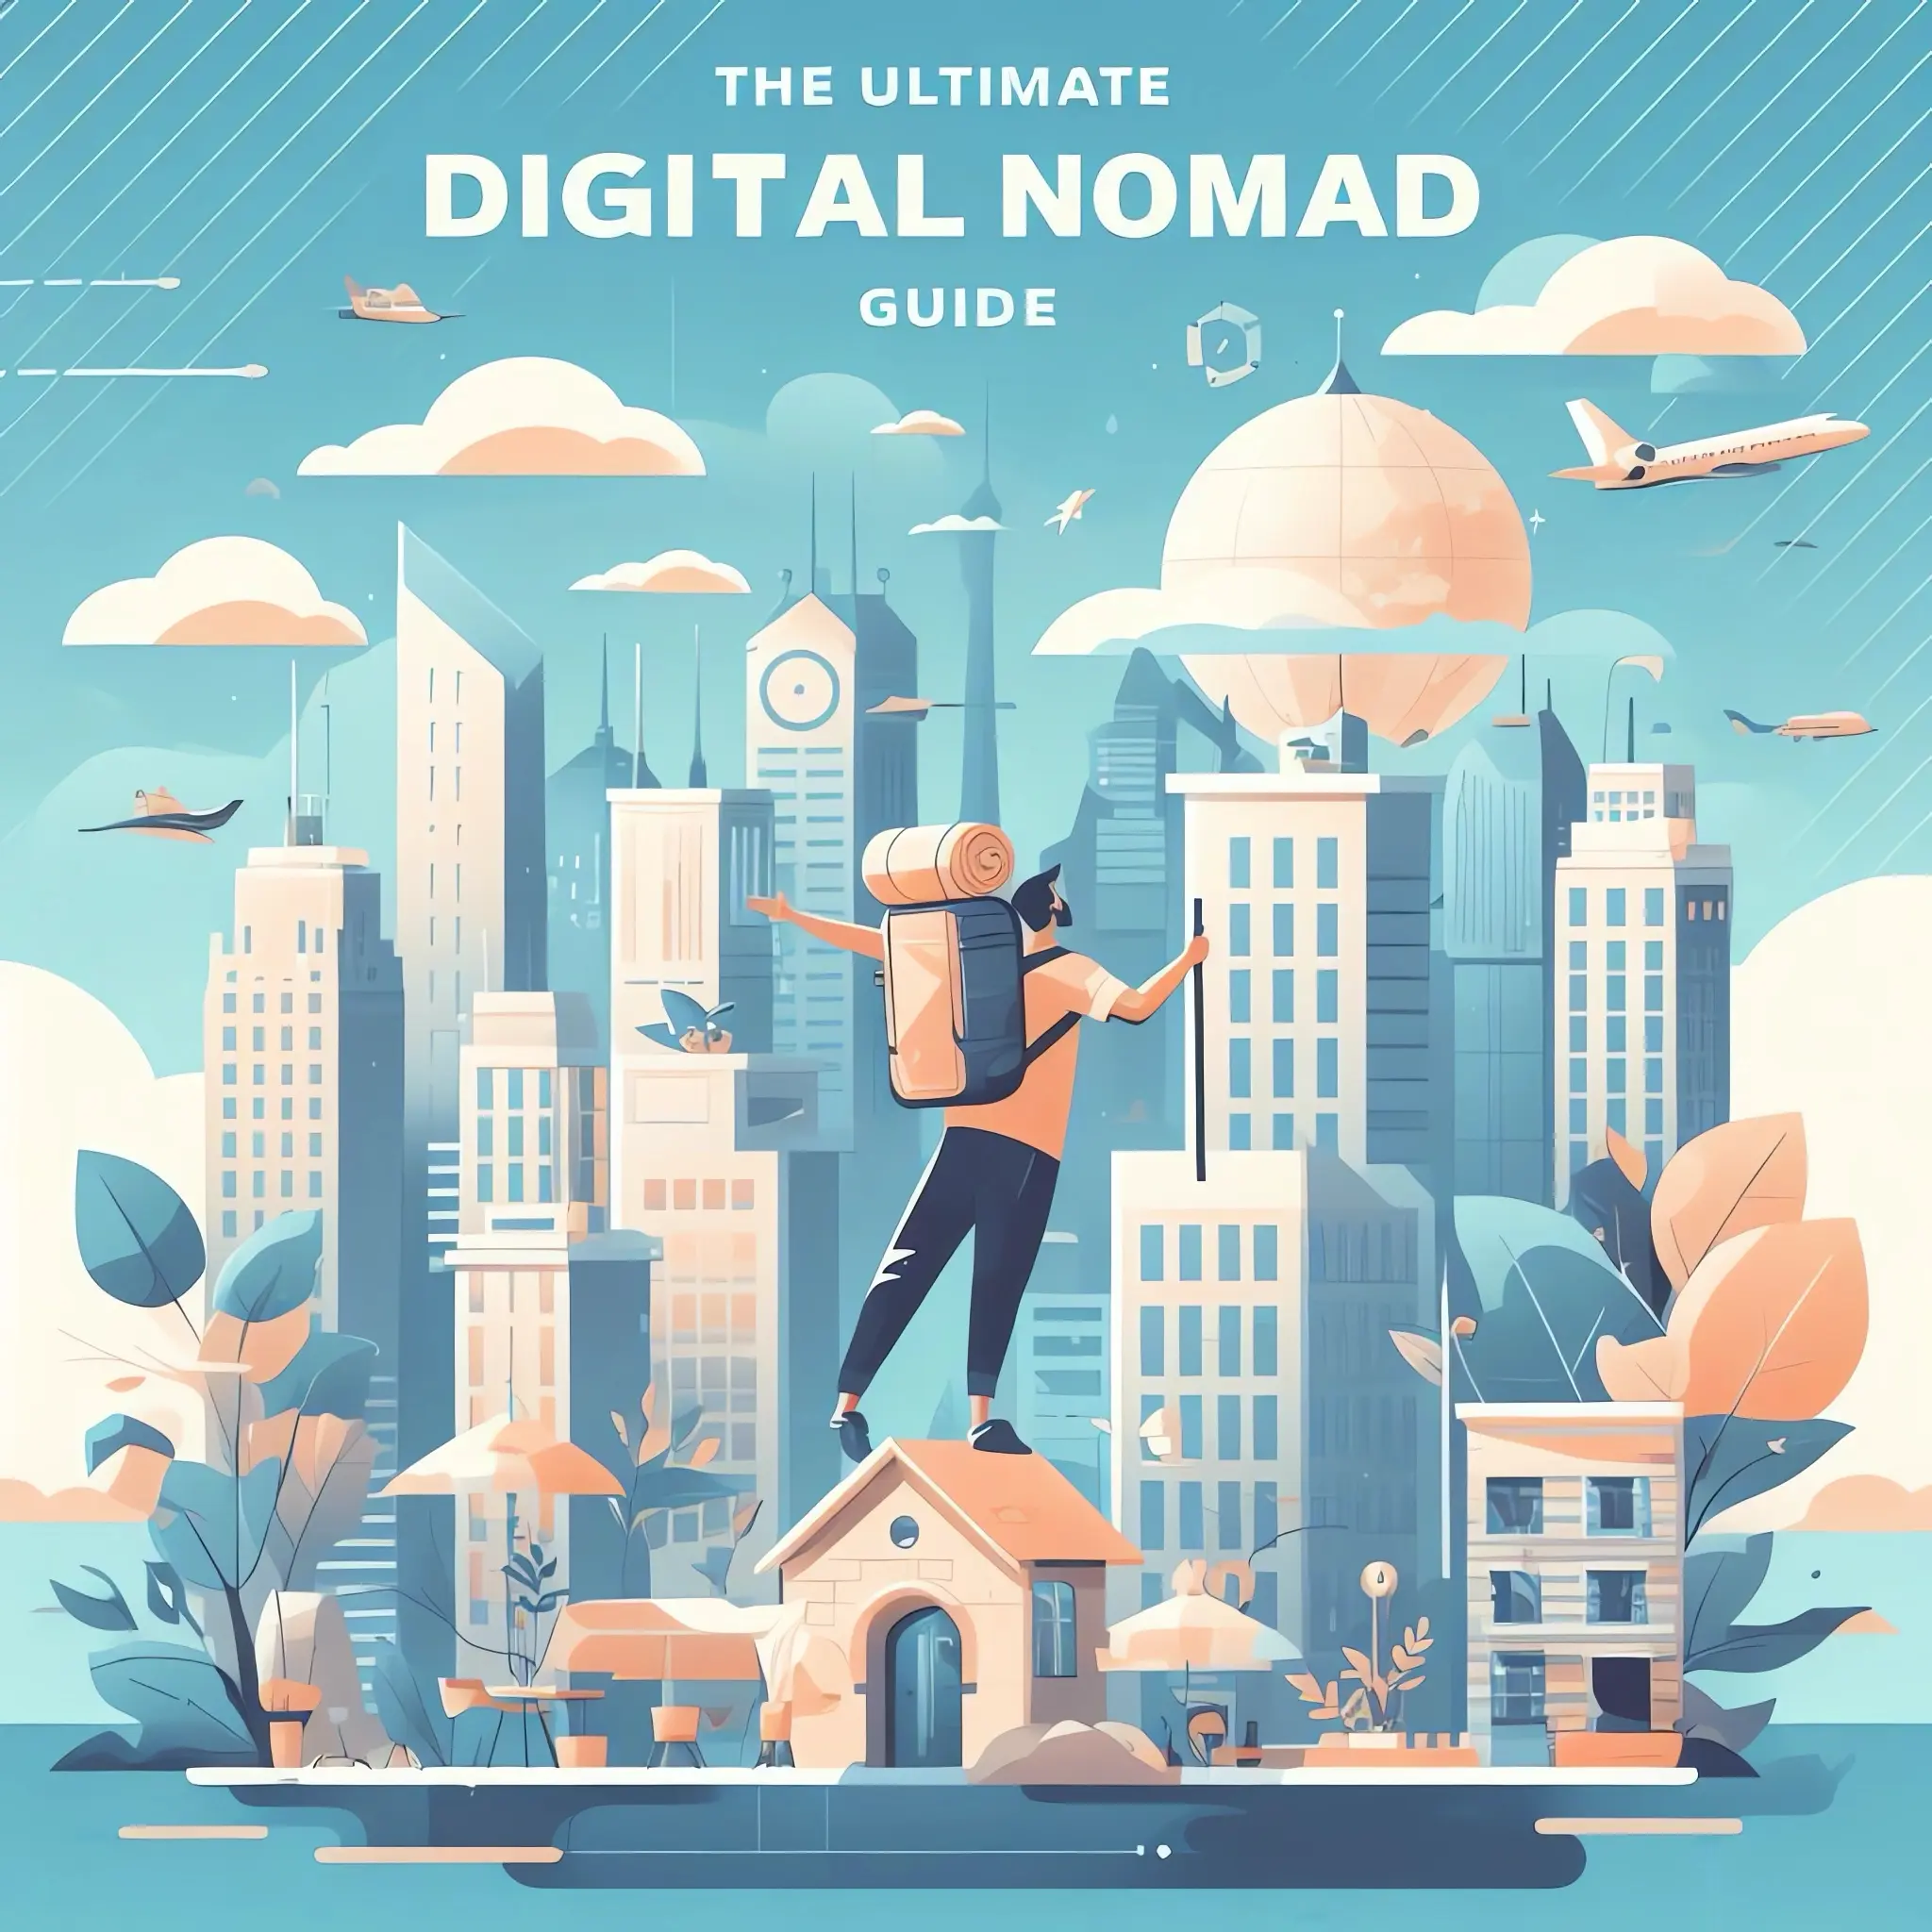 Digital Nomad guide illustration